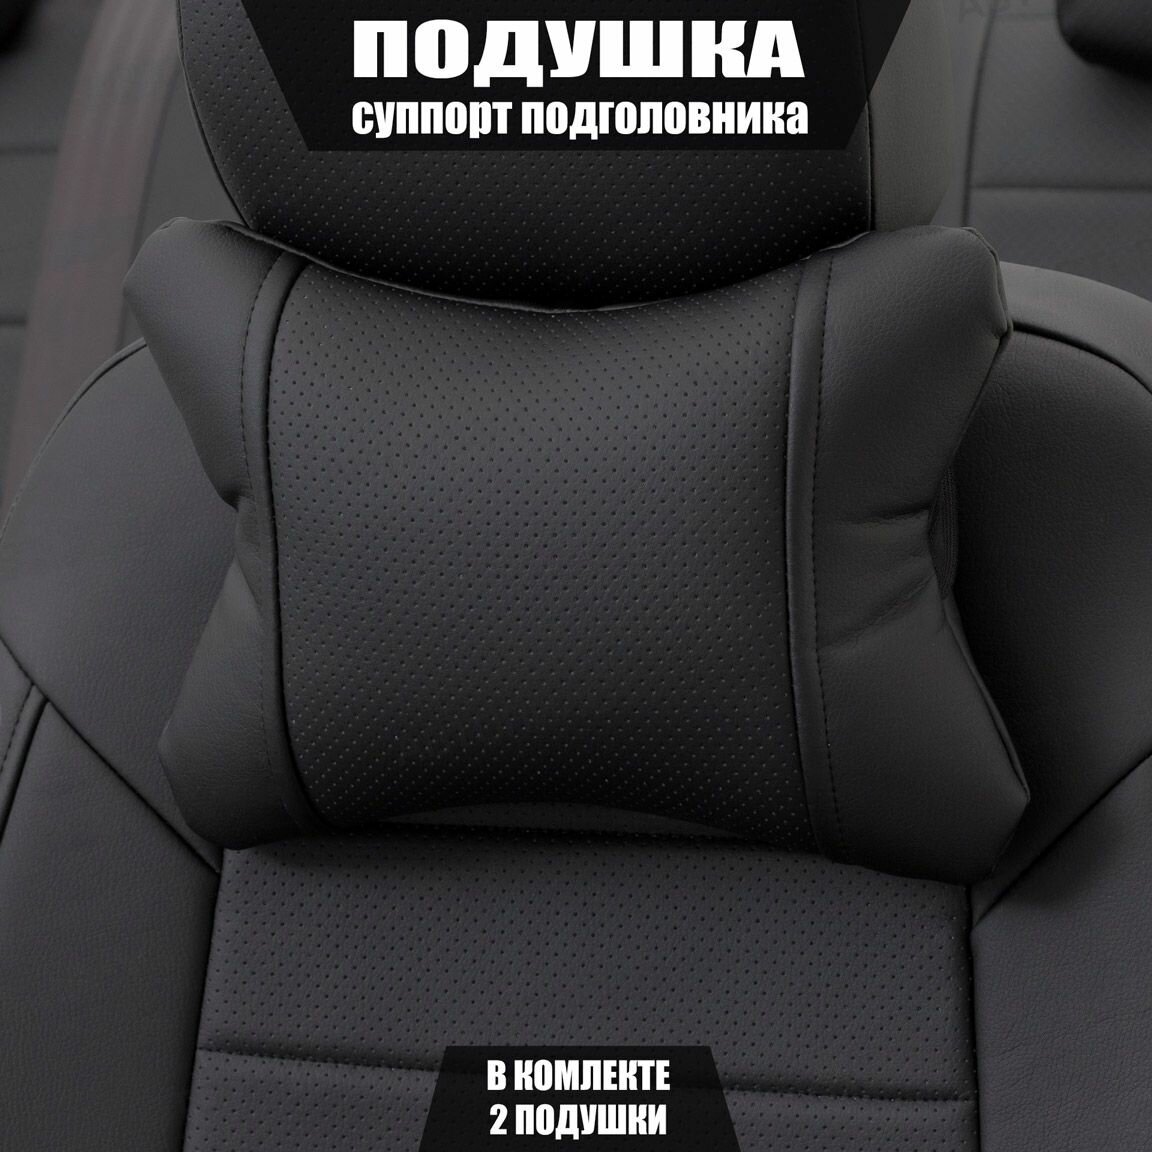 Подушки под шею (суппорт подголовника) для Мазда 6 (2005 - 2008) седан / Mazda 6 Экокожа 2 подушки Черный